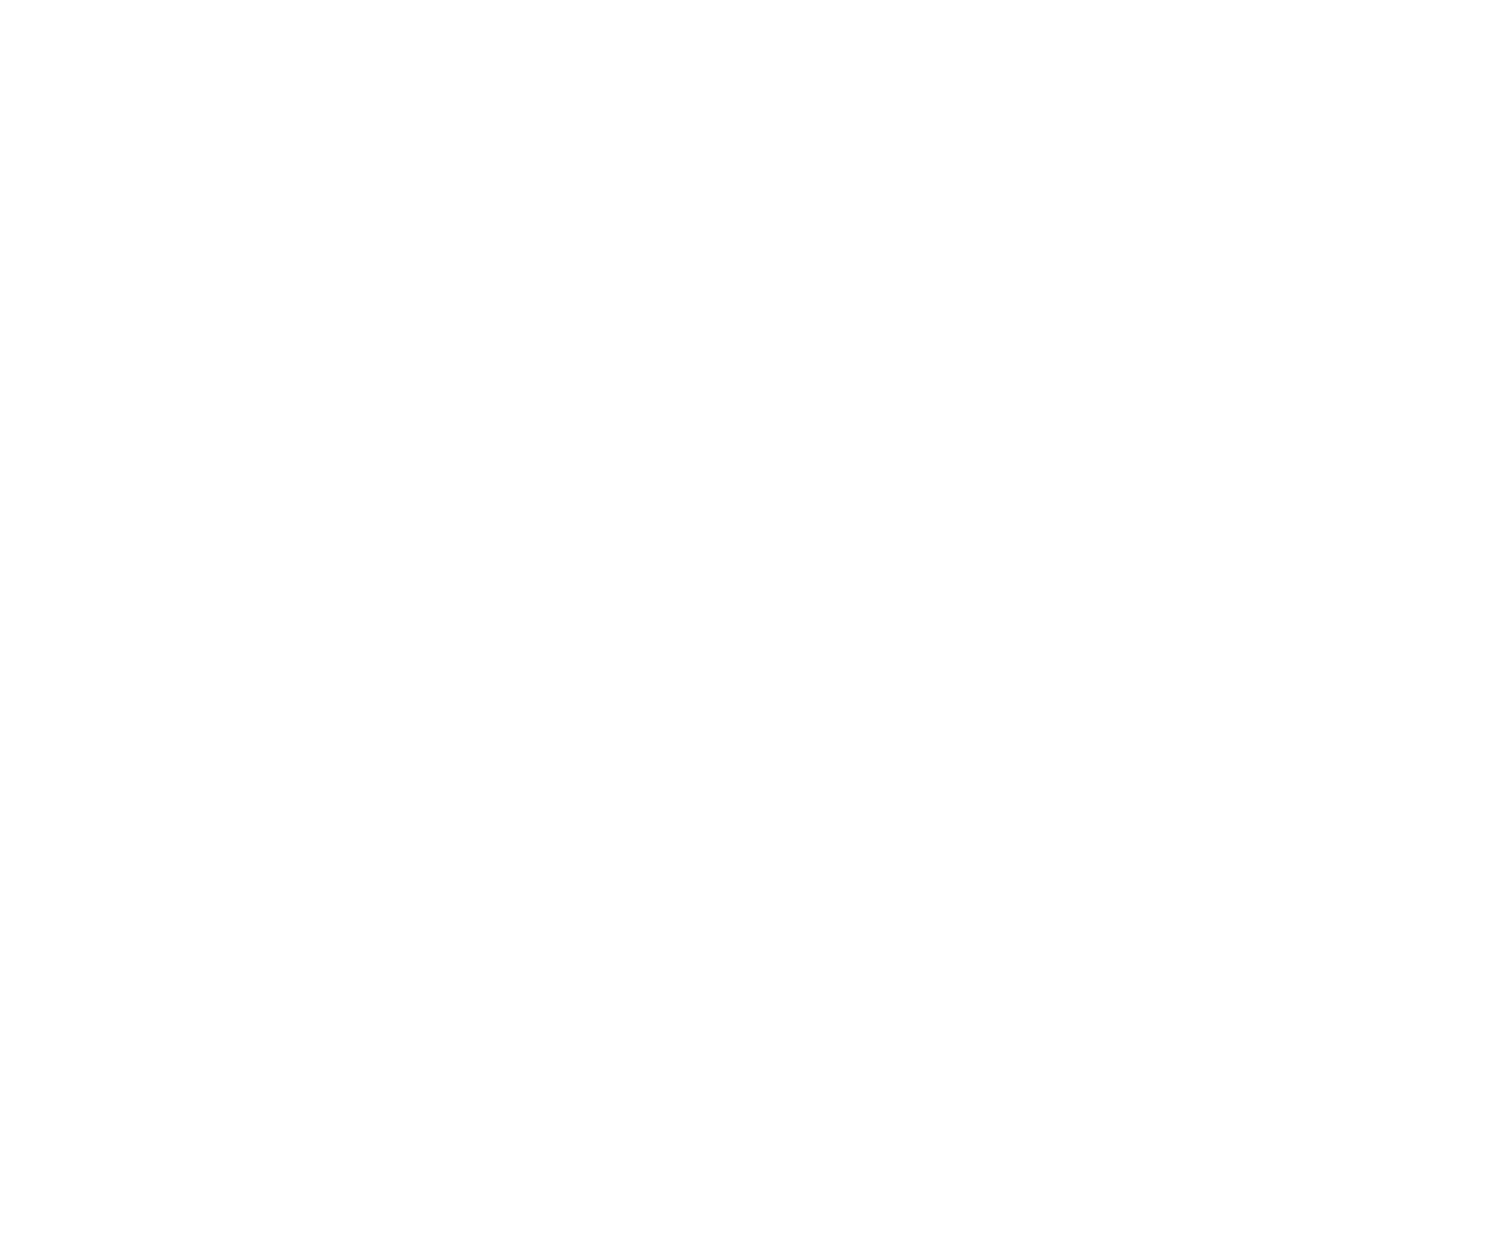 DiDi logo pour fonds sombres (PNG transparent)